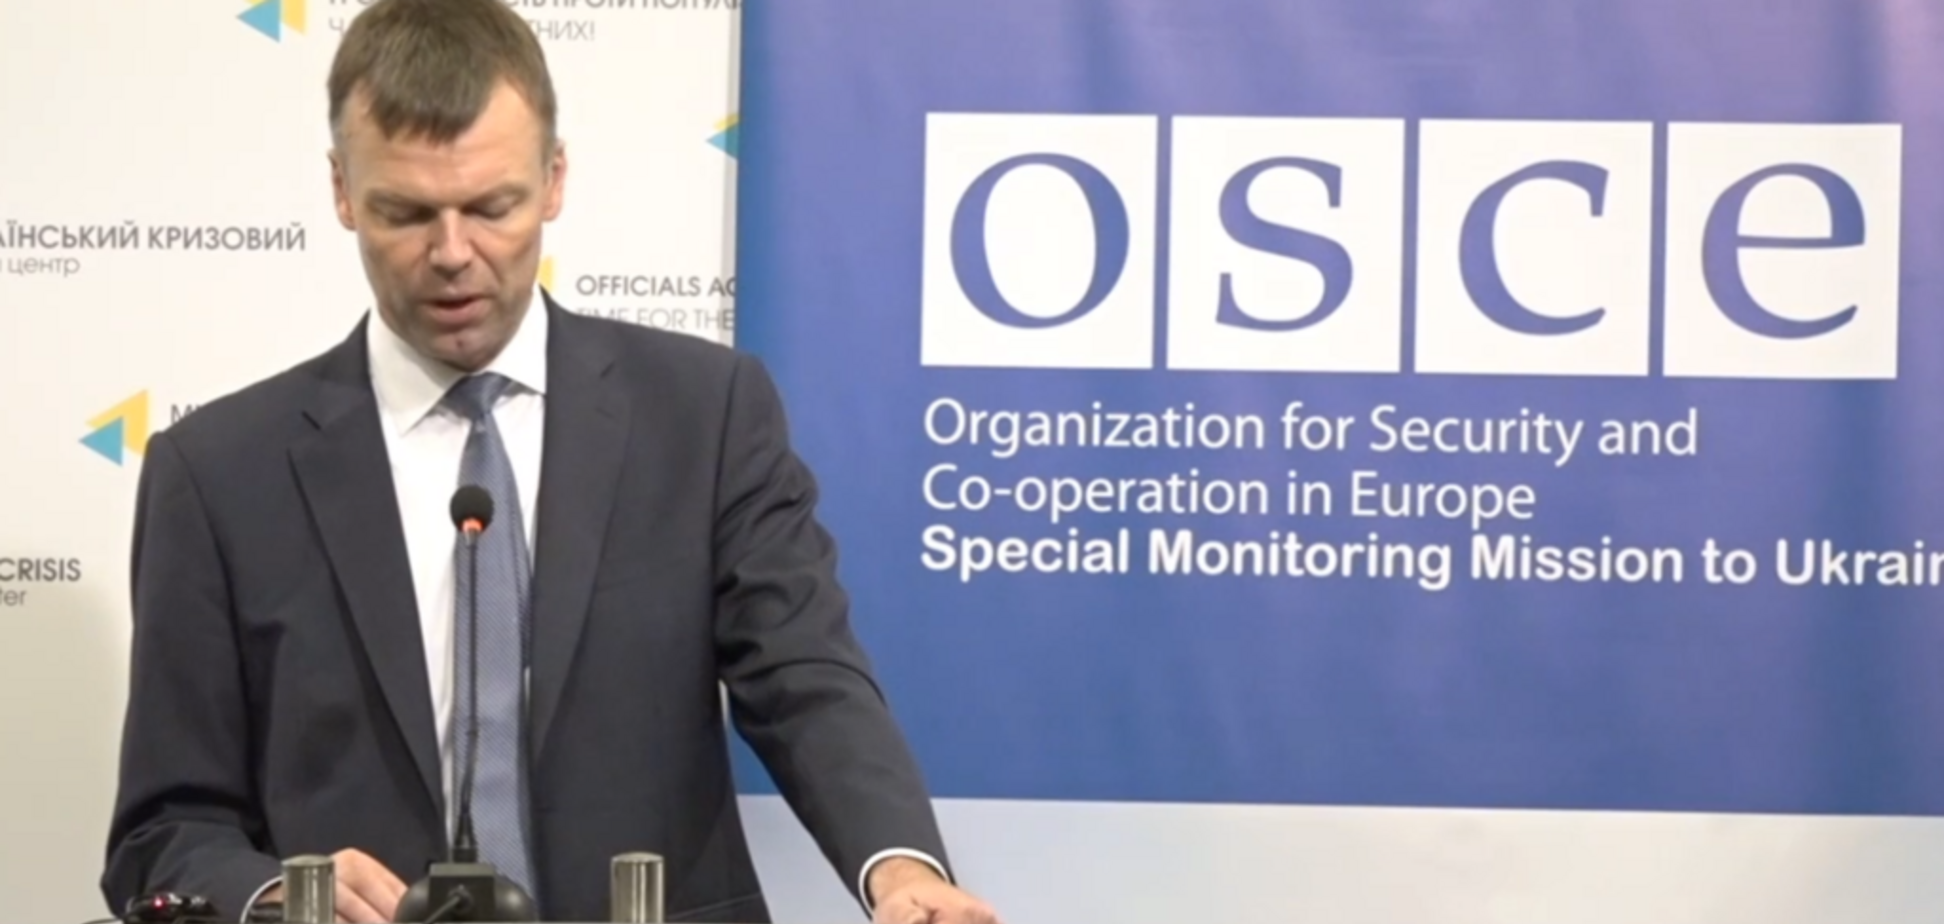 Останнє слово Хуга: заступник голови місії ОБСЄ, який оскандалився, пішов у відставку